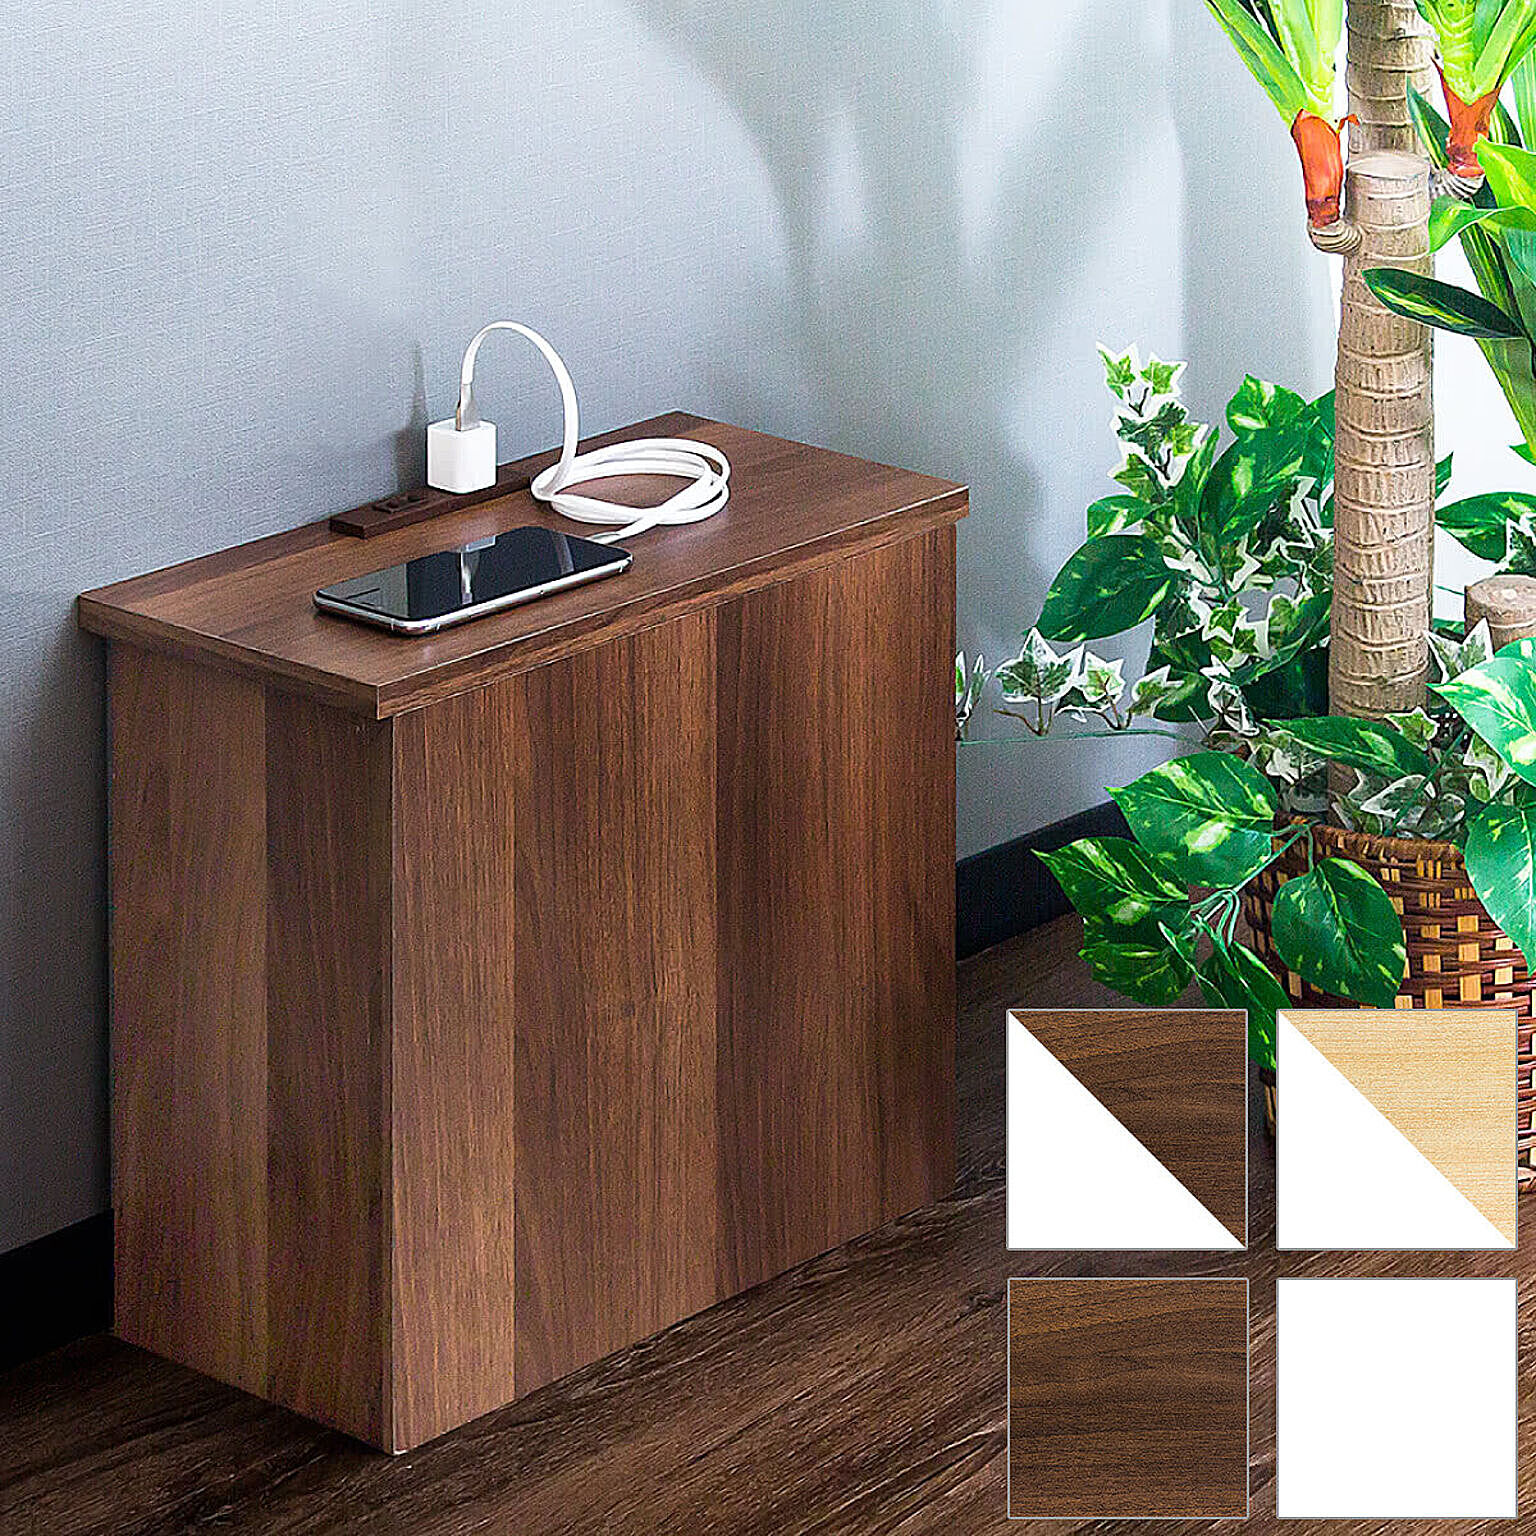 KUROSHIO コンセントカバー 木製 ブラウン ケーブル隠し 収納 コンセント付き - 通販 |  家具とインテリアの通販【RoomClipショッピング】